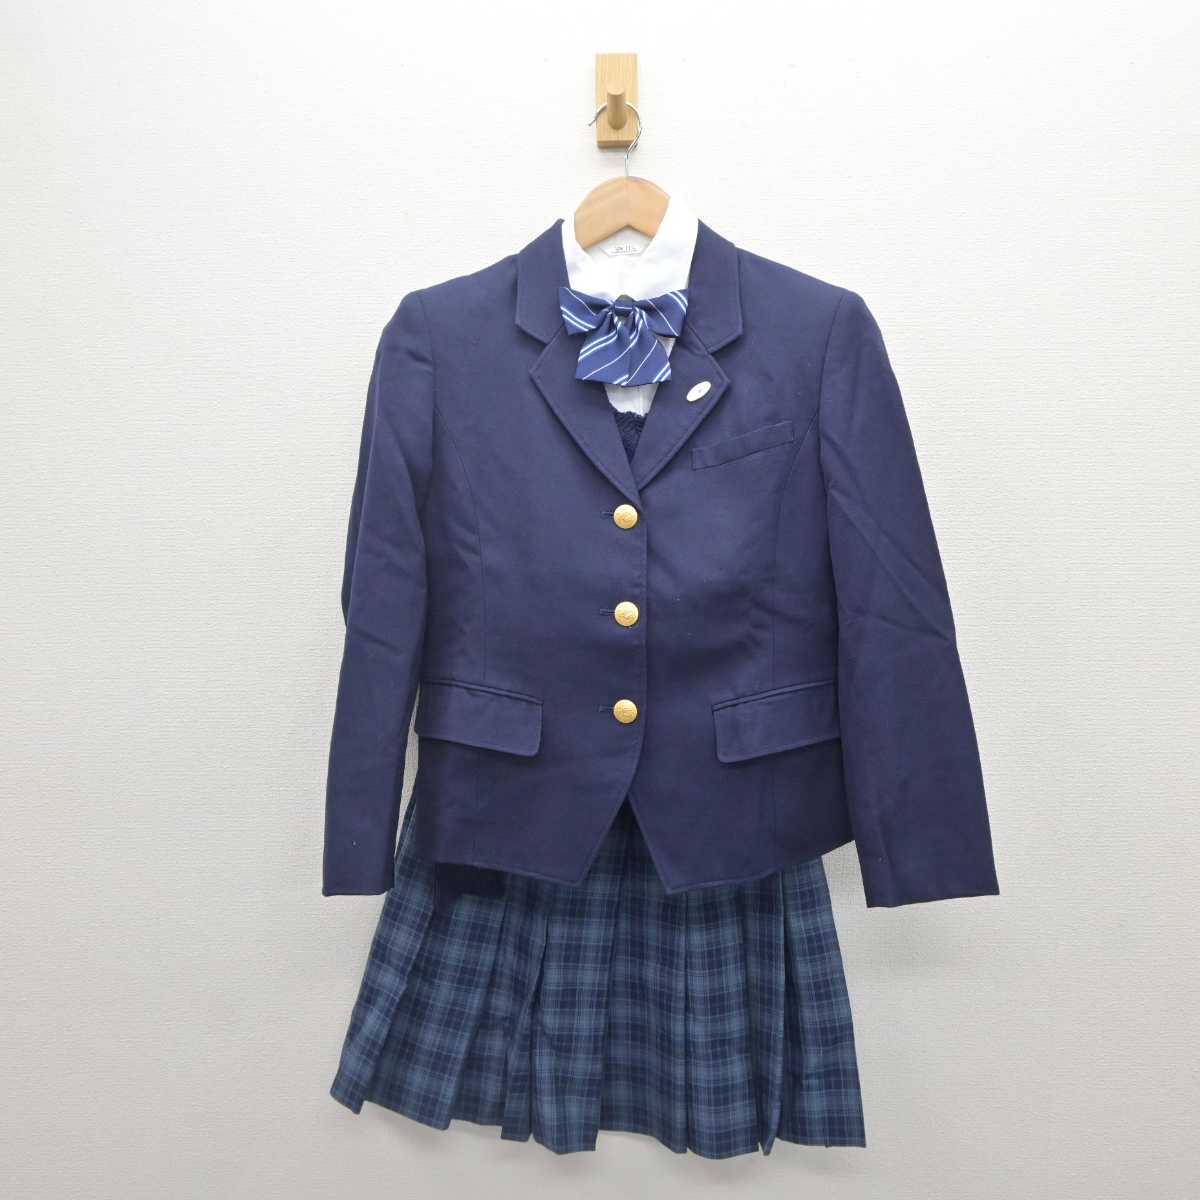 滋賀学園の制服、早い者勝ち - 服/ファッション